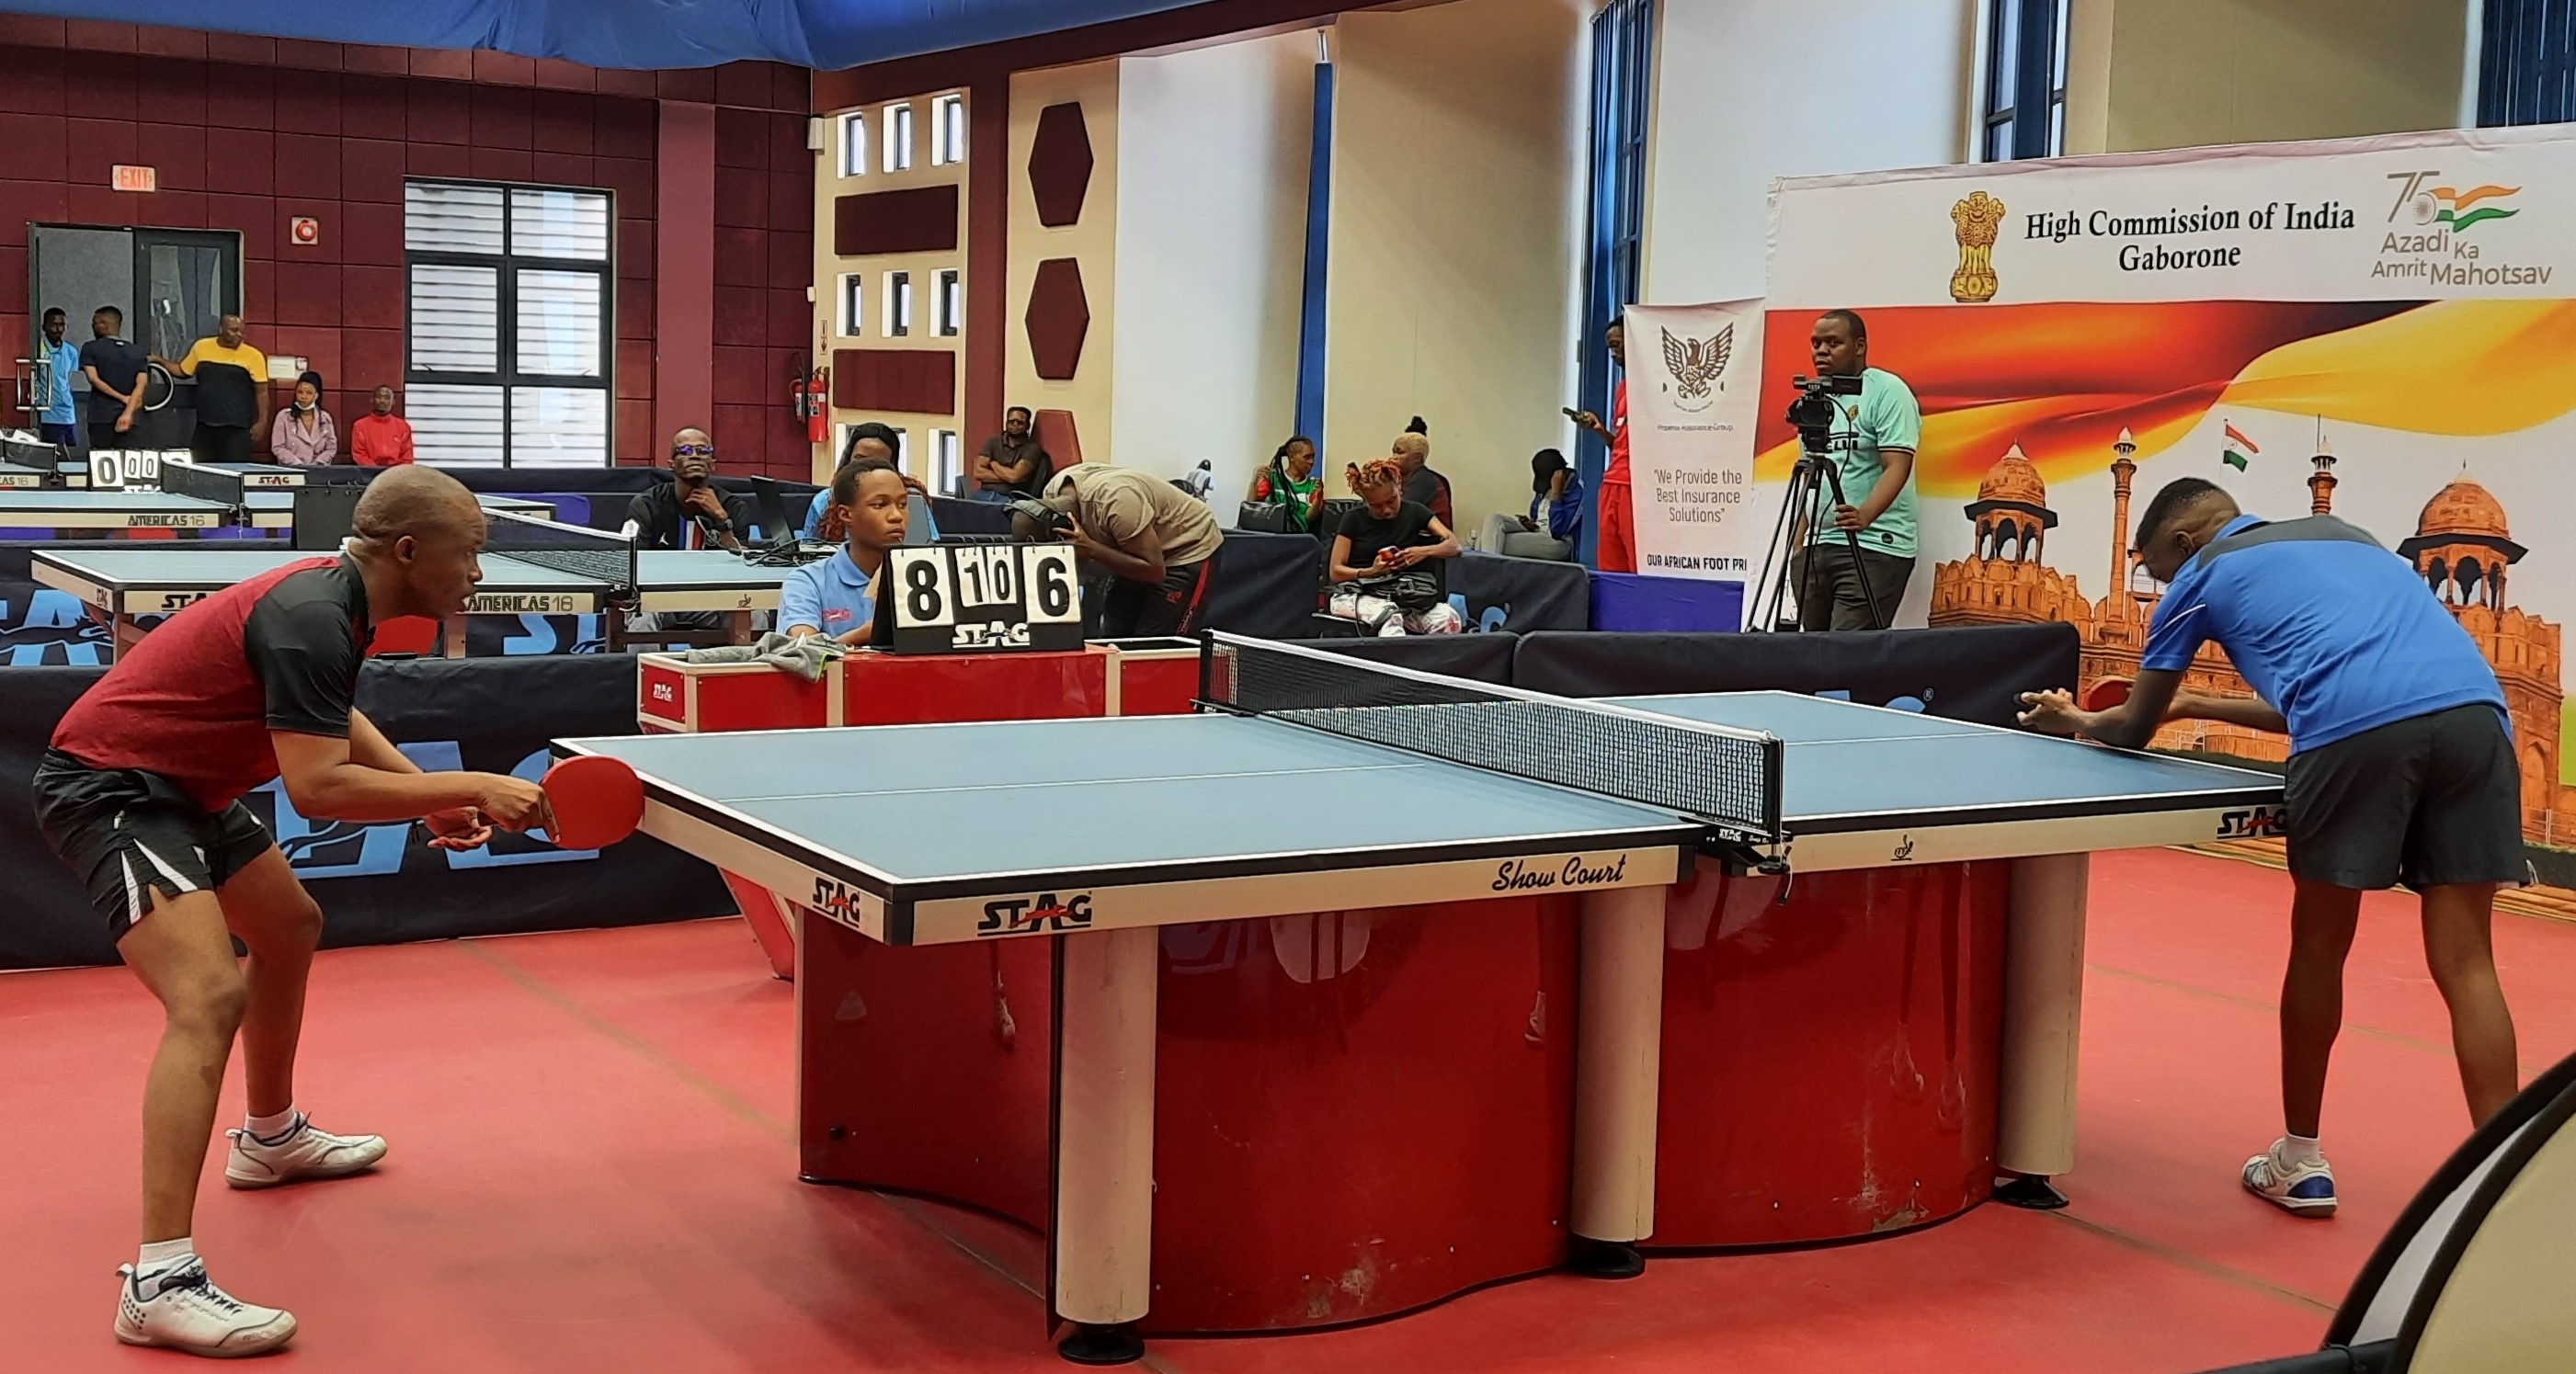 India@75 Table Tennis Tournament